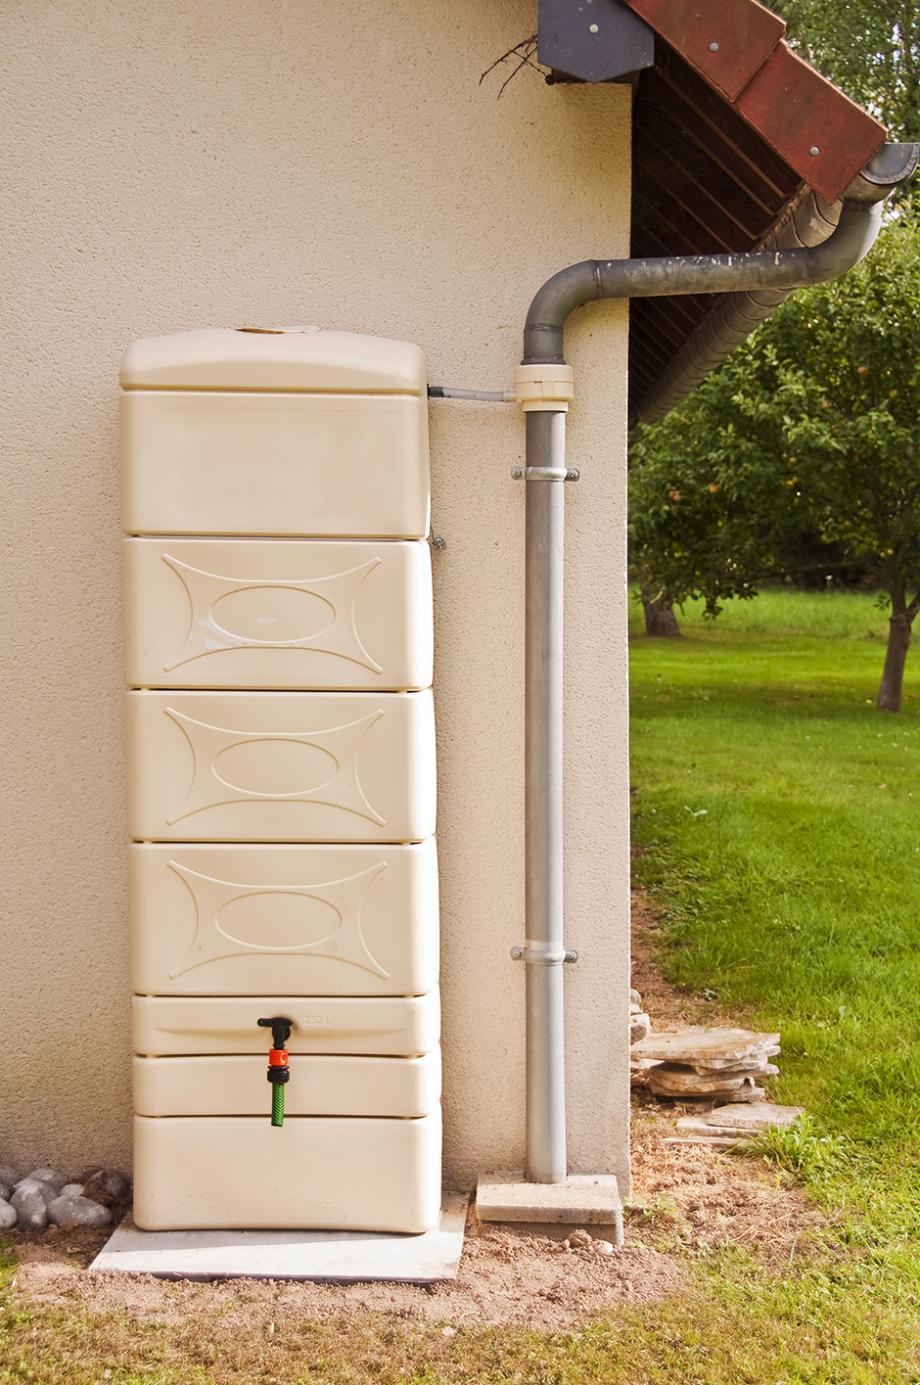 Comment fonctionne un récupérateur d'eau de pluie ?